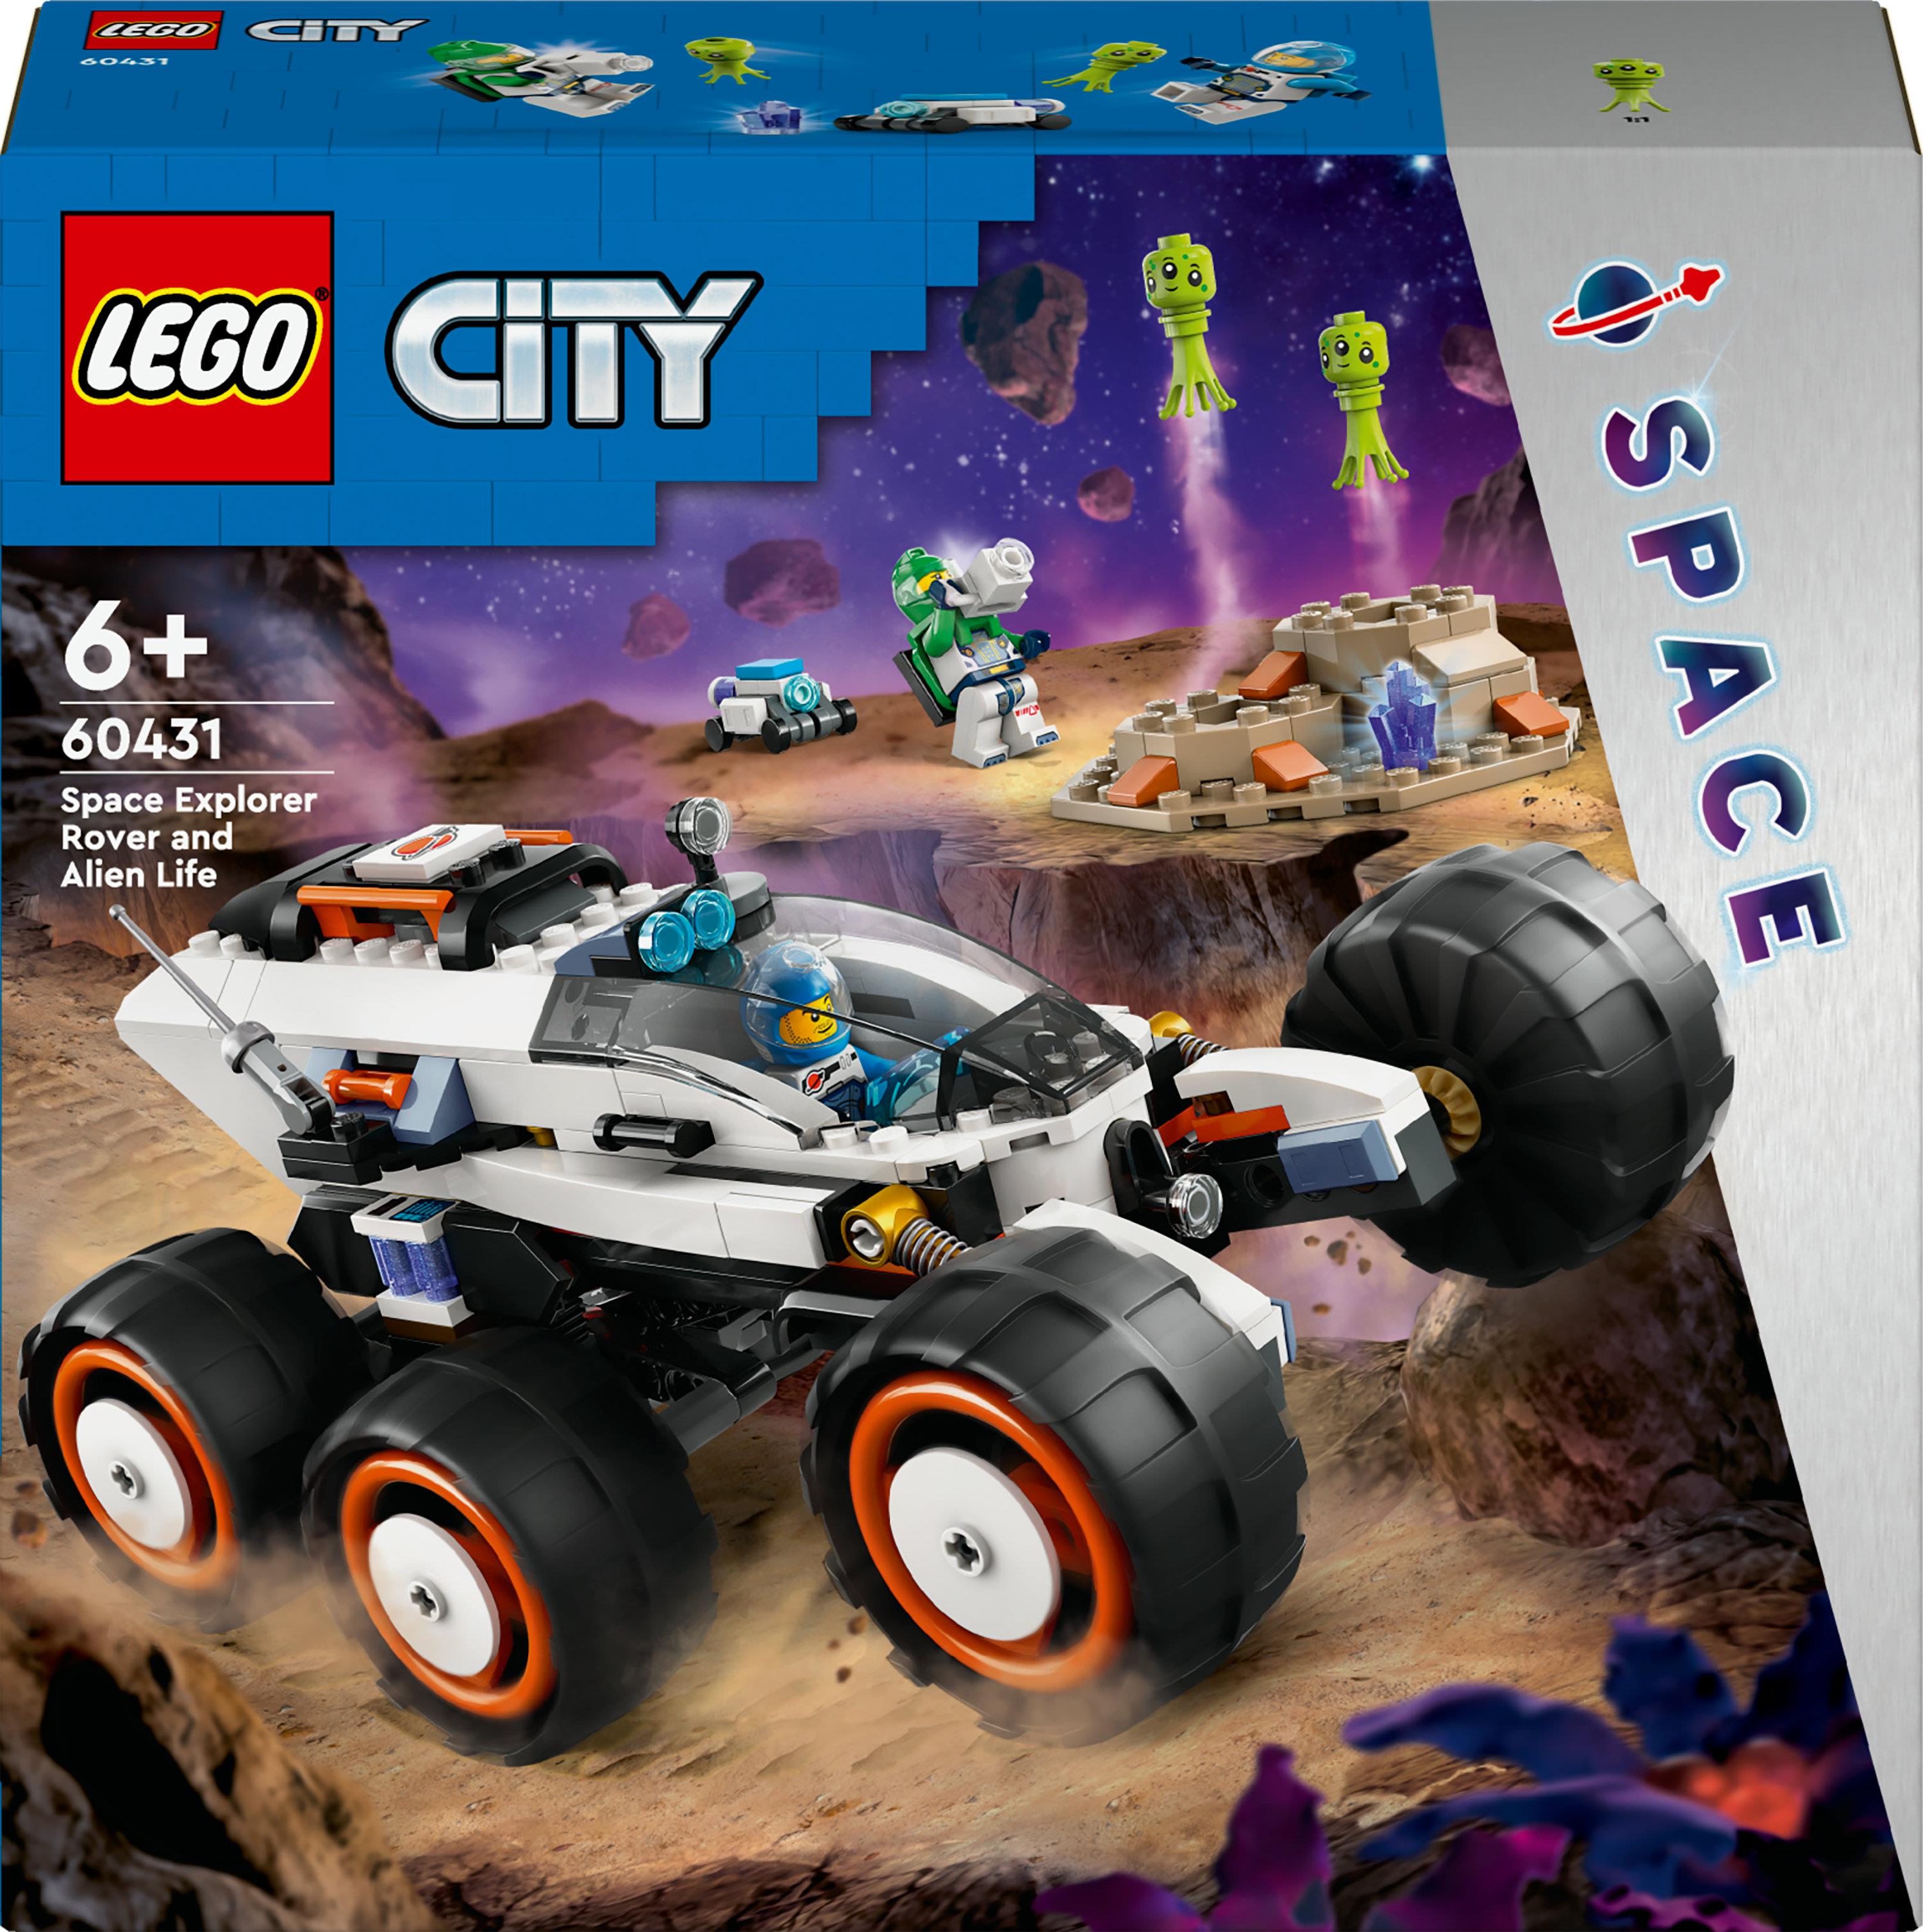 LEGO City 60431 Rover